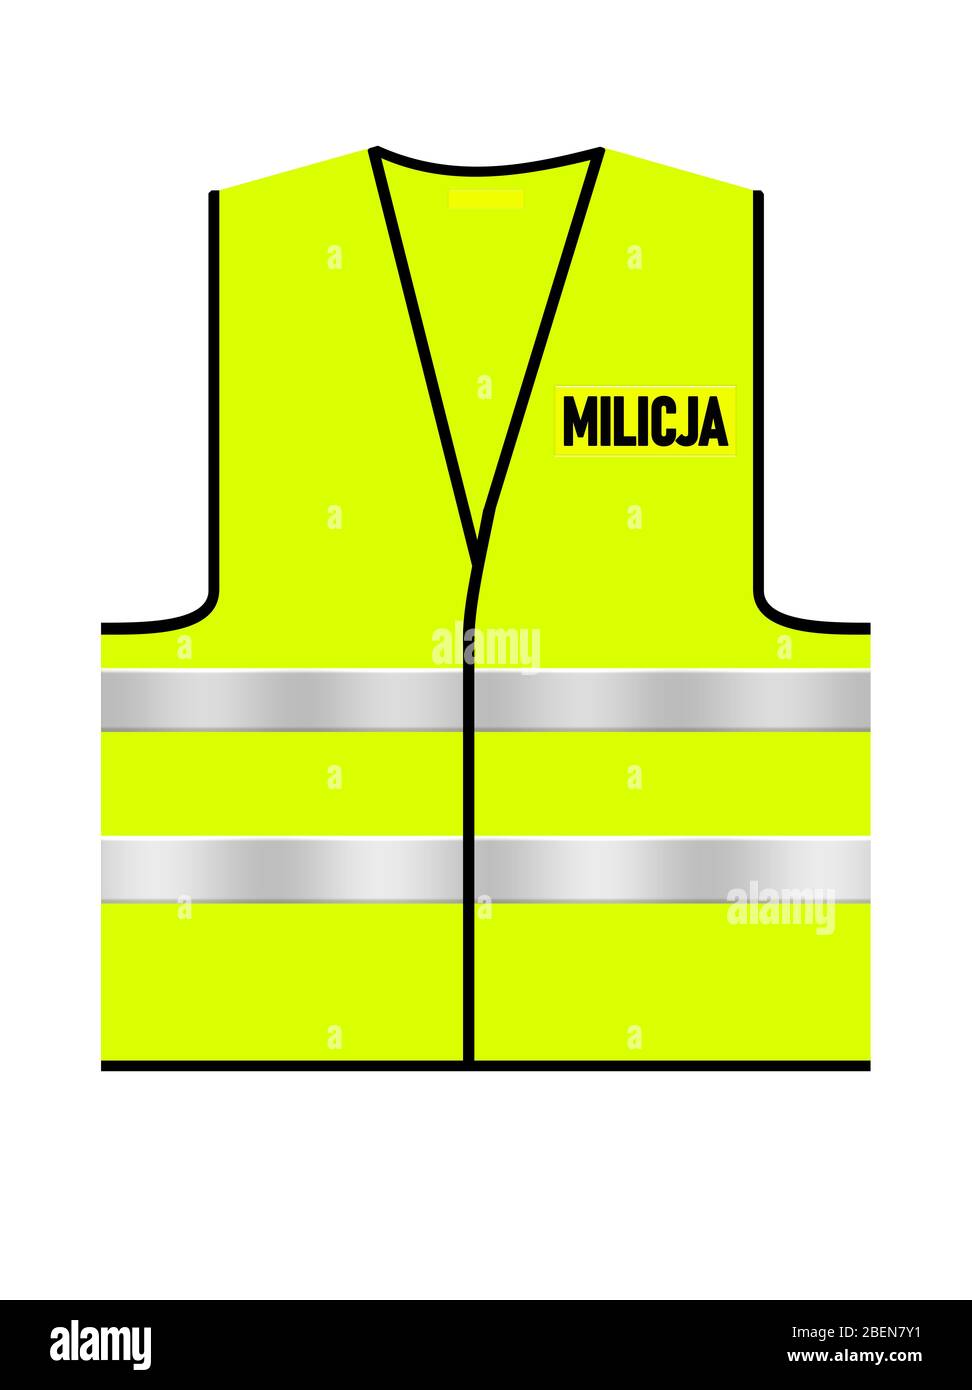 Vert vif – jaune trafic polonais Milicja maillot de corps sur fond blanc isolé. Vue avant. Illustration du concept. Logo en texte noir. Banque D'Images